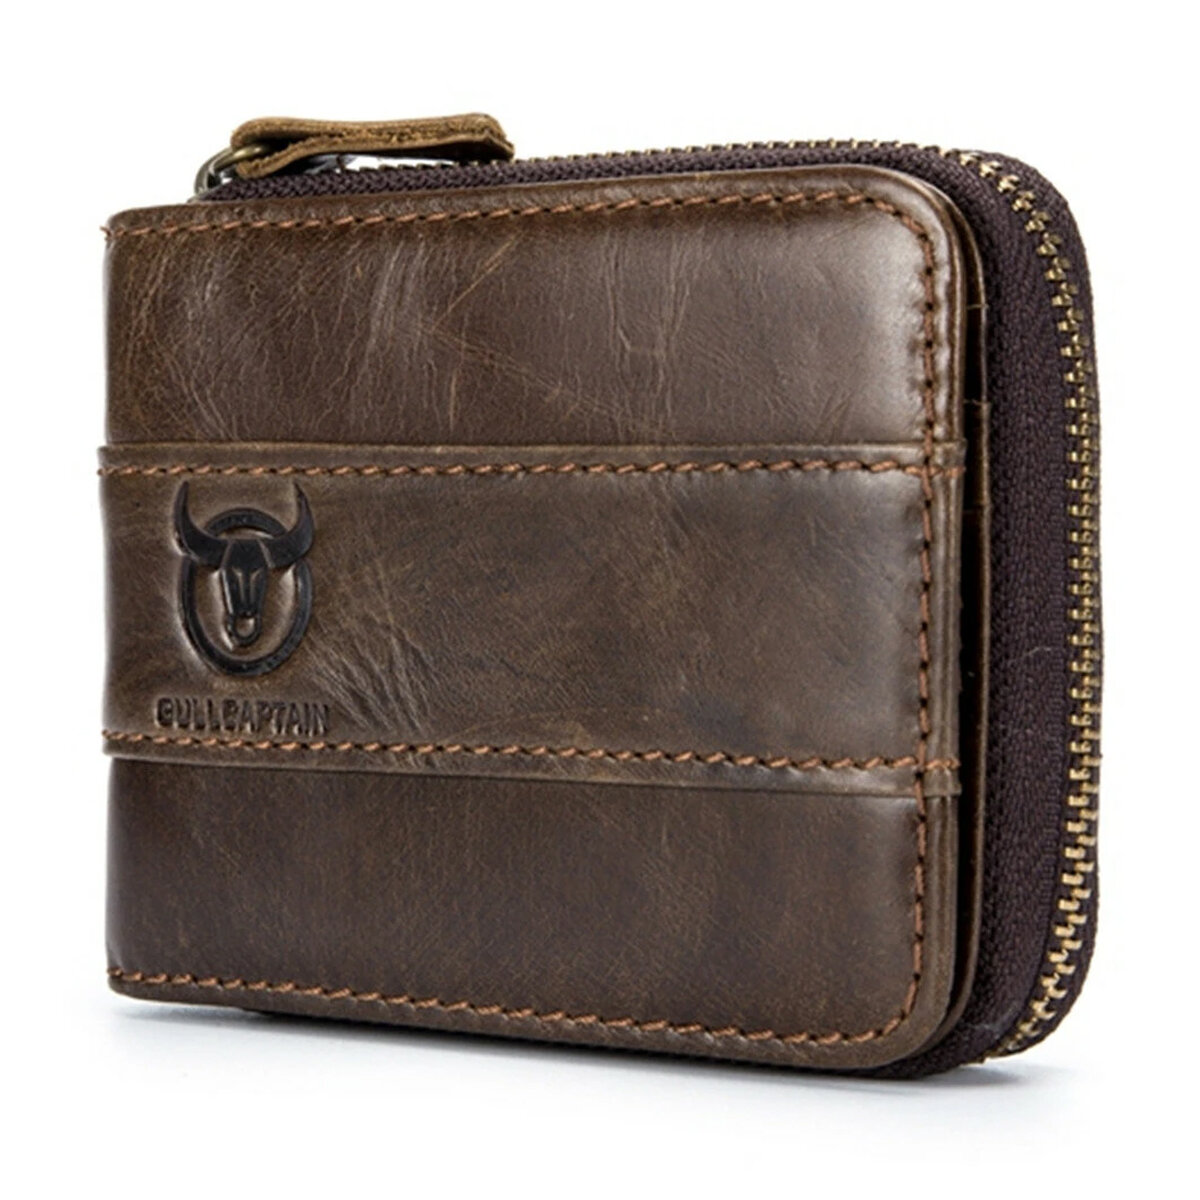 Image of Bullcaptain Genuine Leather Trifold Wallet RFID Antimagnetic Vintage 11 Card Slots Coin Bag Wallet For Men